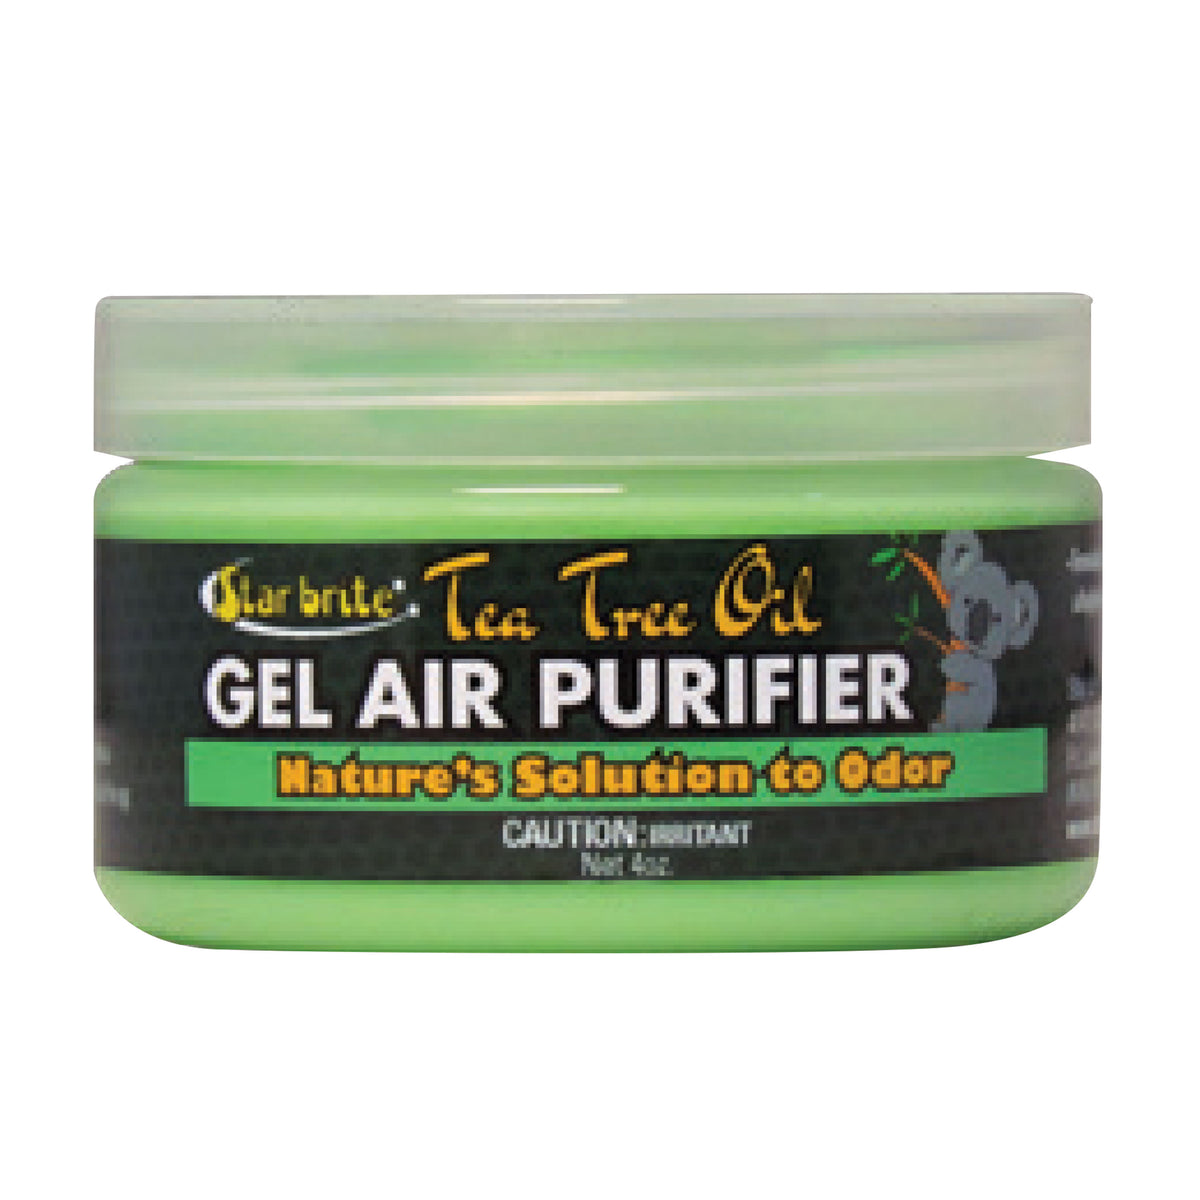 Star brite 096504 Tea Tree Oil Gel Air Purifier - 4 oz.